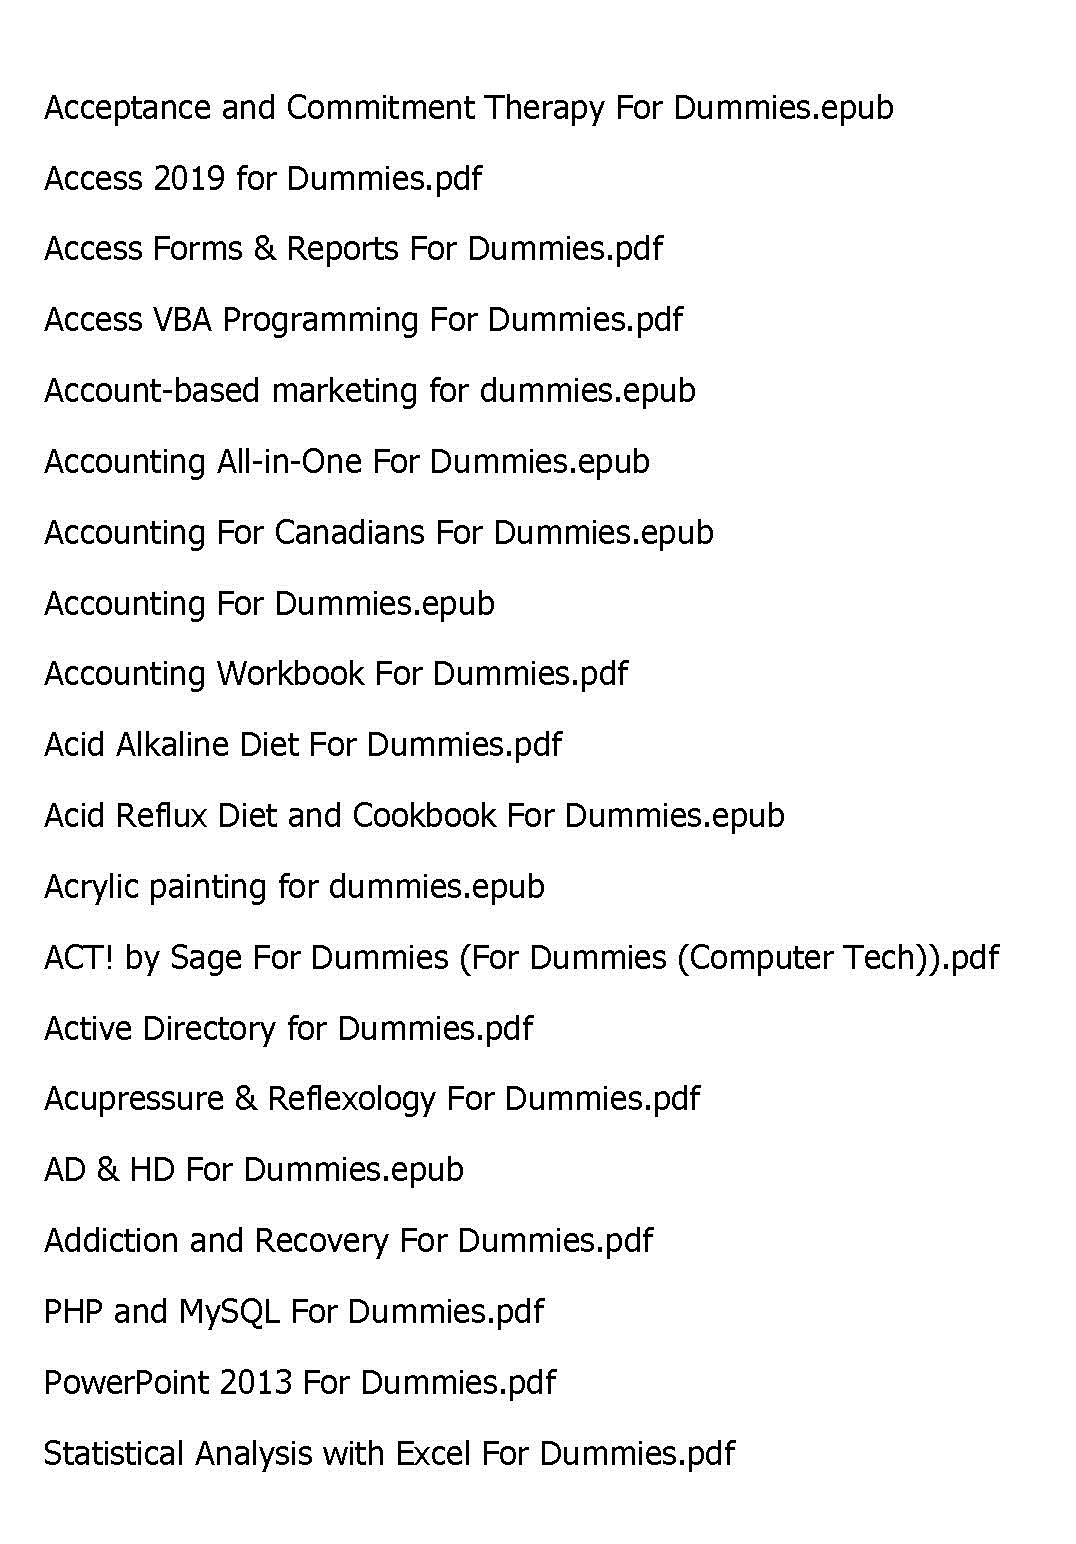 Acid reflux diet for dummies pdf